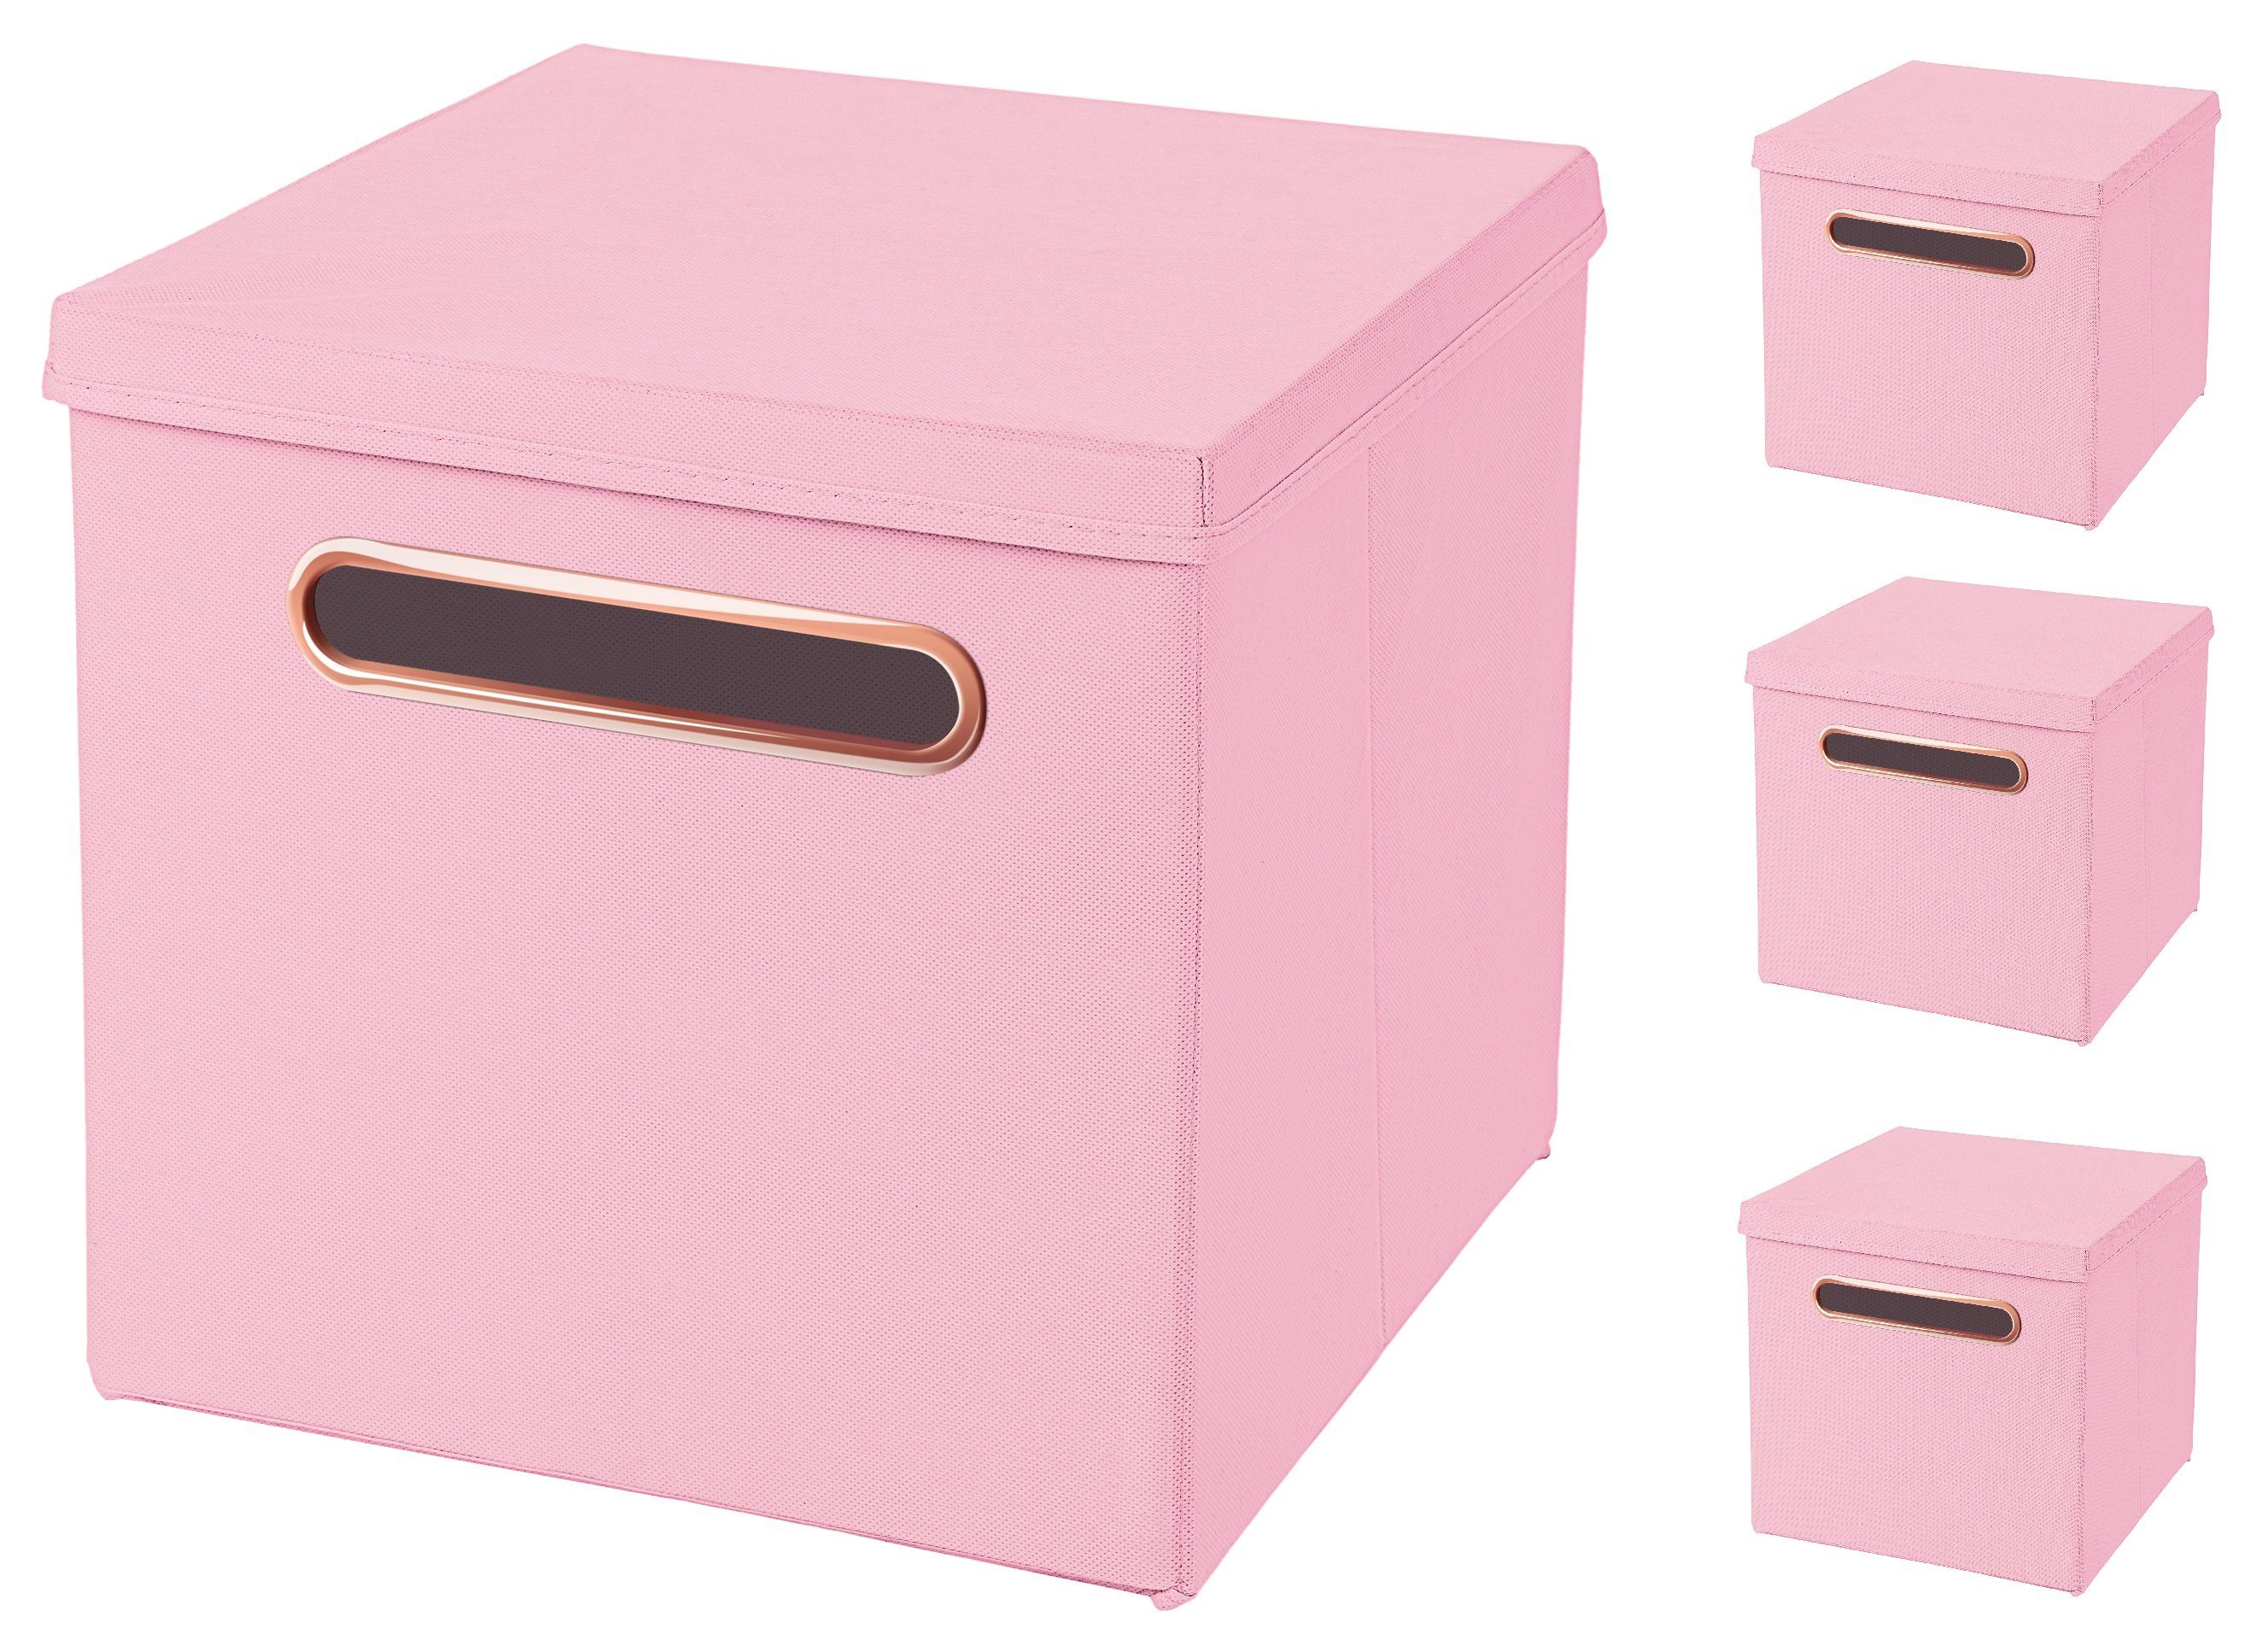 StickandShine Faltbox 4 Stück 32,5 x 32,5 x 32,5 cm Faltbox mit Deckel  Rosegold Griff Stoffbox Aufbewahrungsbox 4er SET in verschiedenen Farben  Luxus Faltkiste